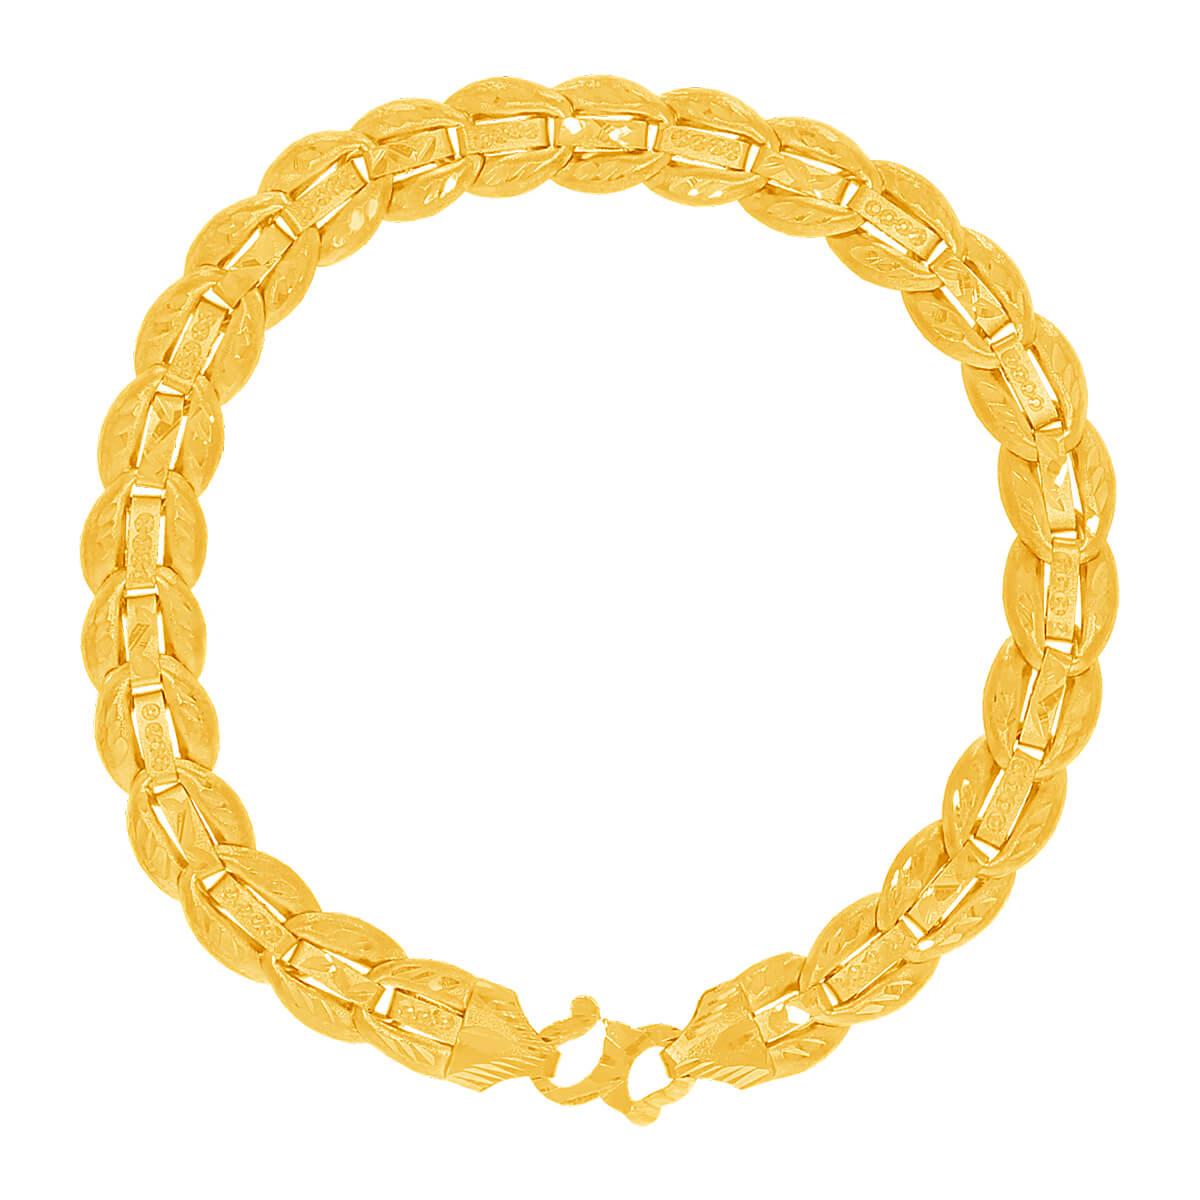 Casual Wear mens chain bracelet mens silver bracelets, 10gm